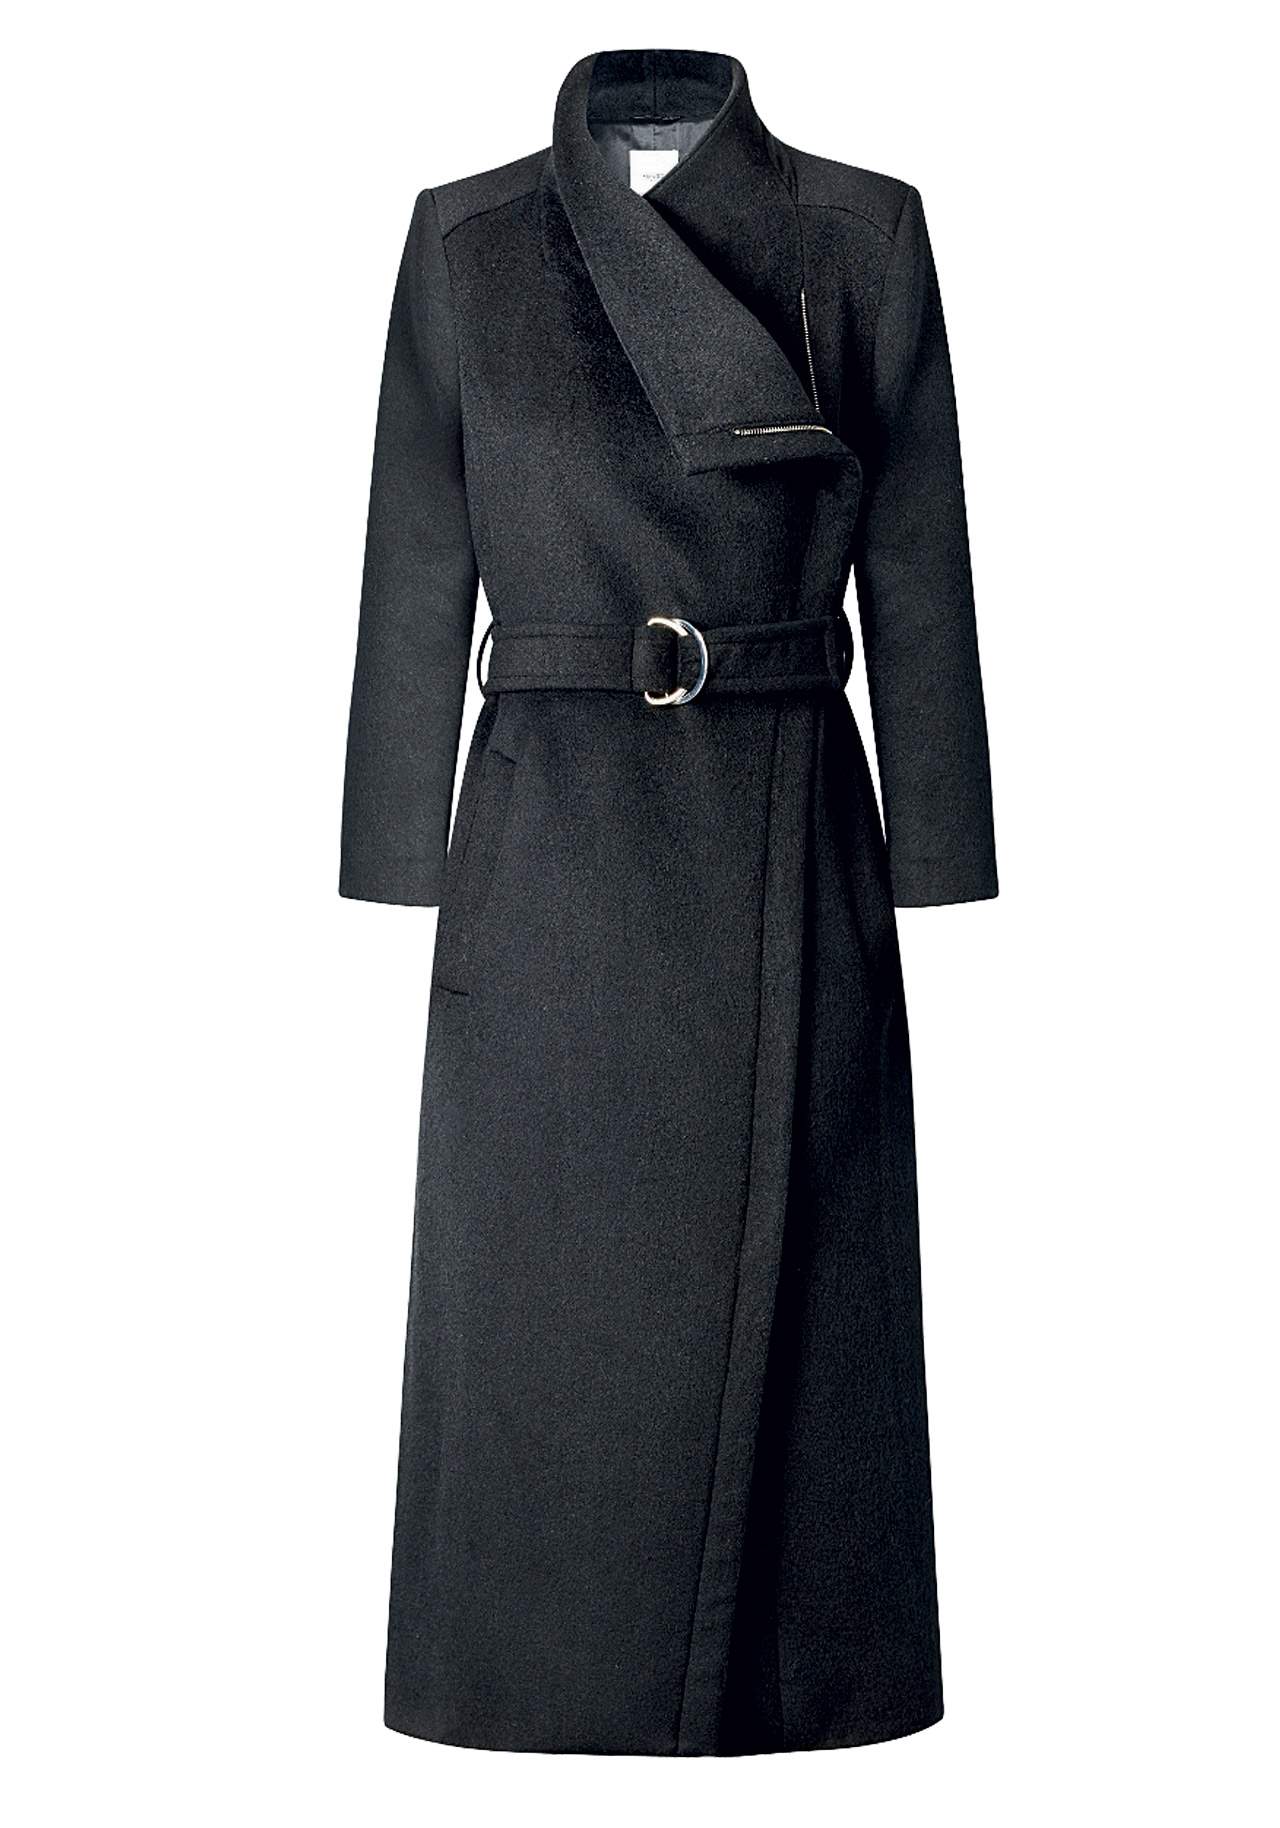 El abrigo entallado abrigos gustosos Cuello alto, de MANGO, 99,99€